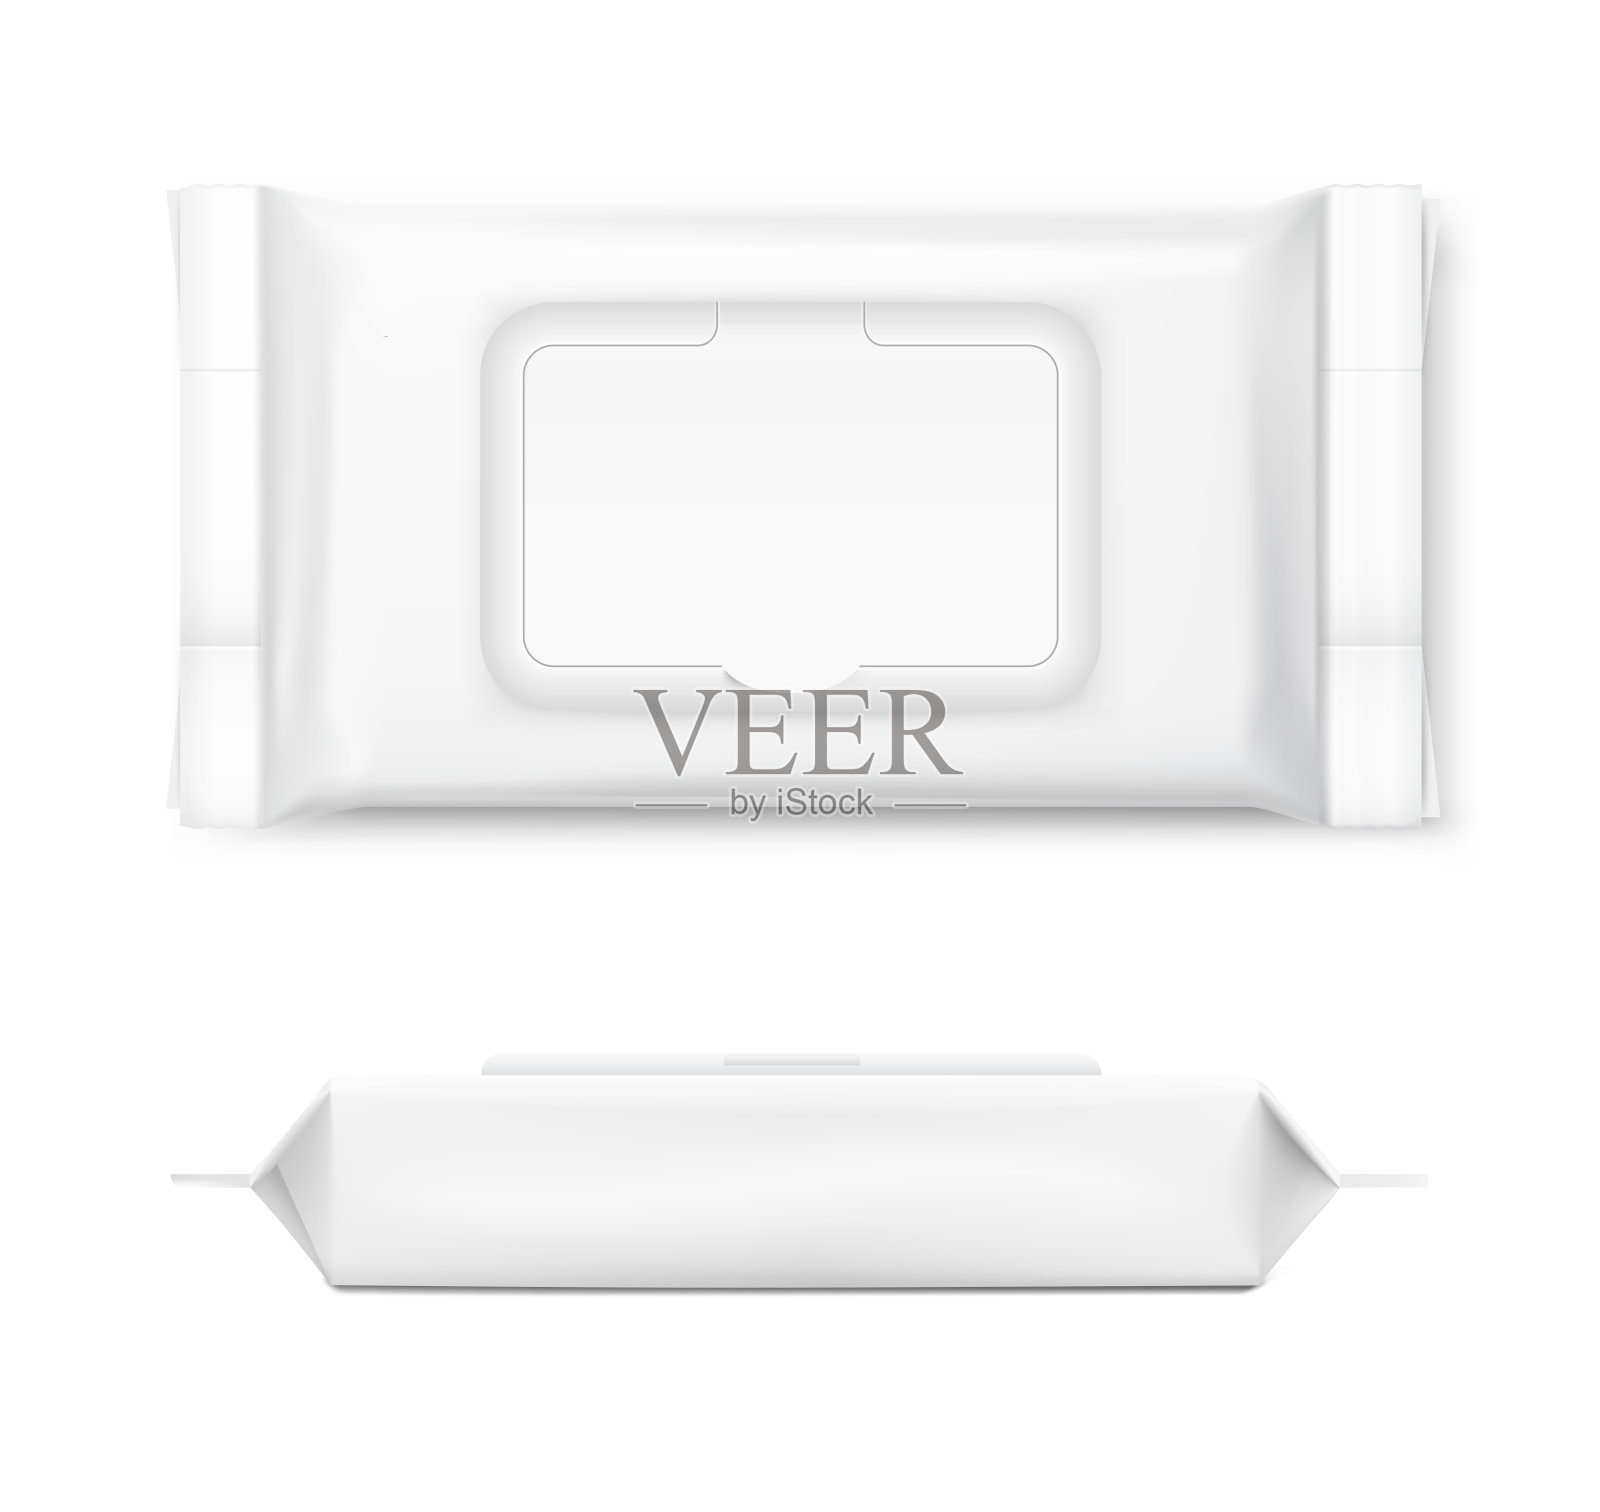 一套湿纸巾流包与现实的透明阴影在白色的背景。设计元素图片